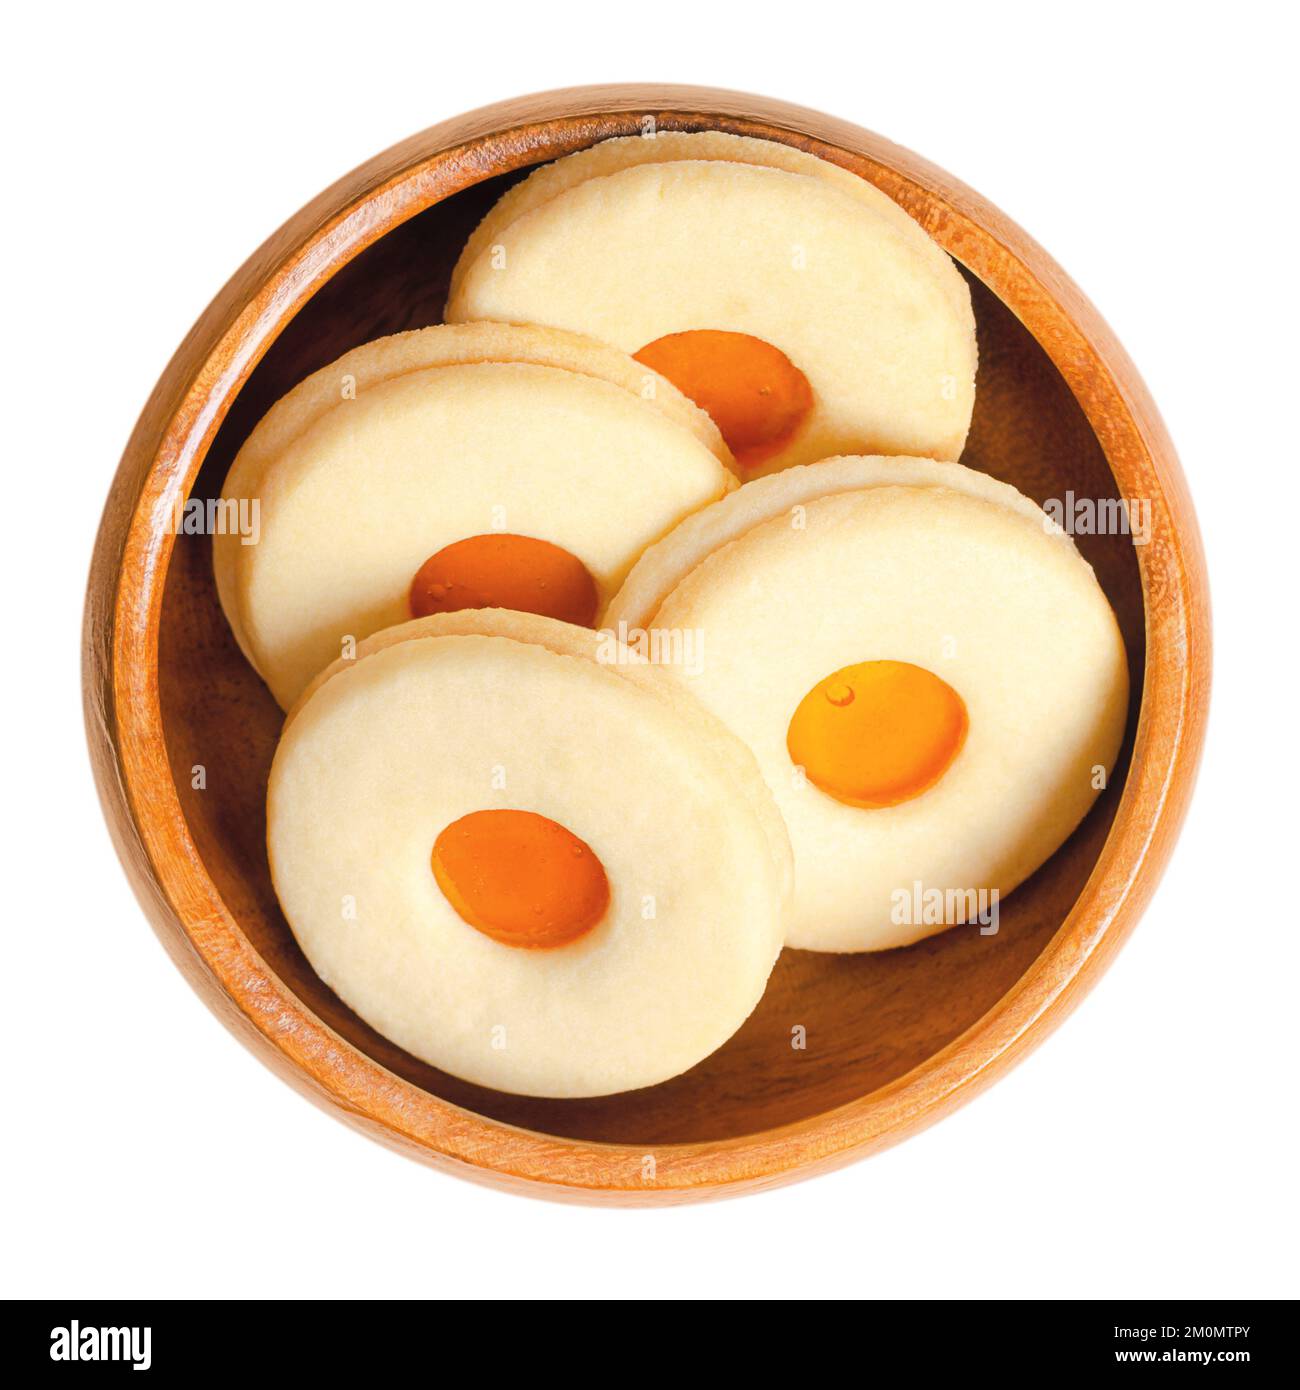 Biscuits Linzer, biscuits de Noël traditionnels autrichiens, dans un bol en bois. Biscuits ronds classiques au beurre sablé. Banque D'Images